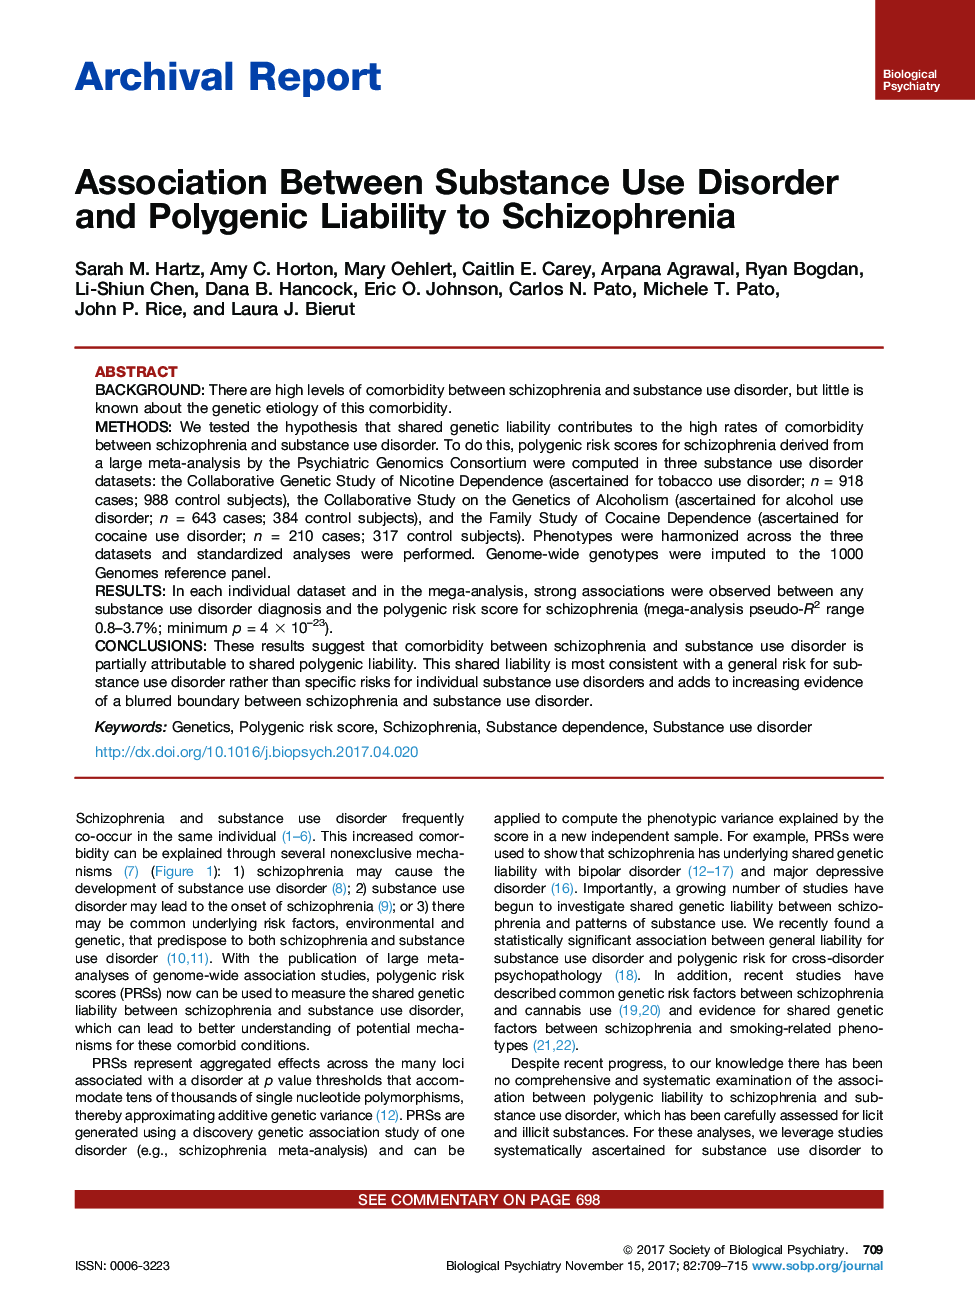 گزارش بایگانی ارتباط بین اختلال مصرف مواد و مسئولیت پلی آنژیال به اسکیزوفرنیا 